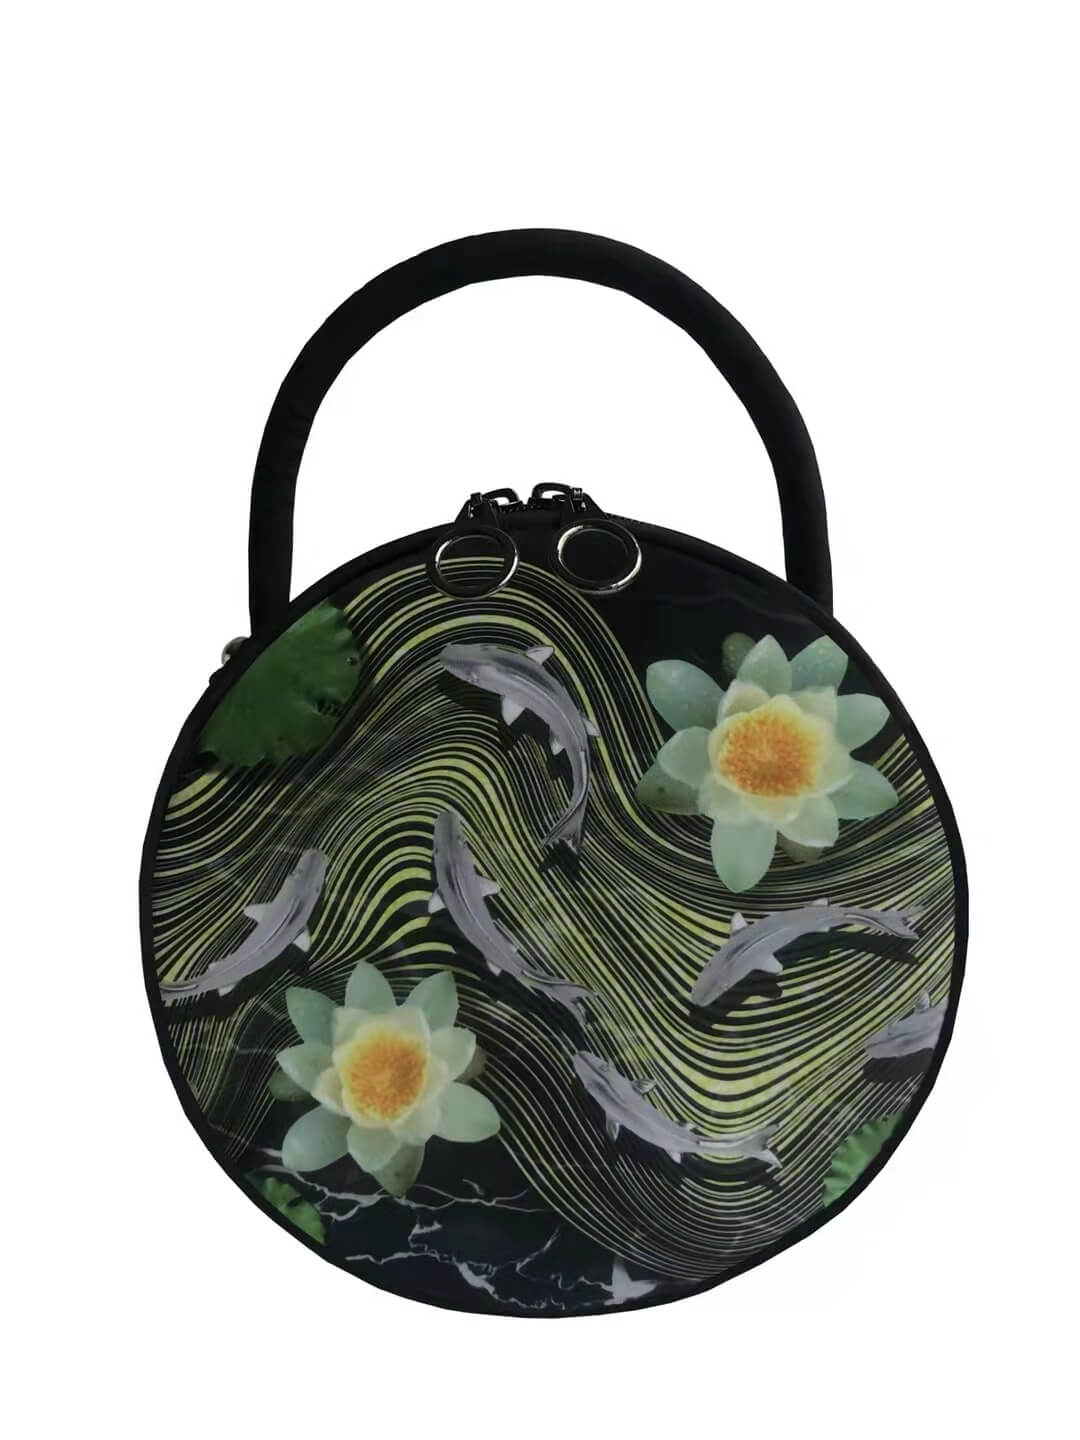 Round makeup handbag with customized logo